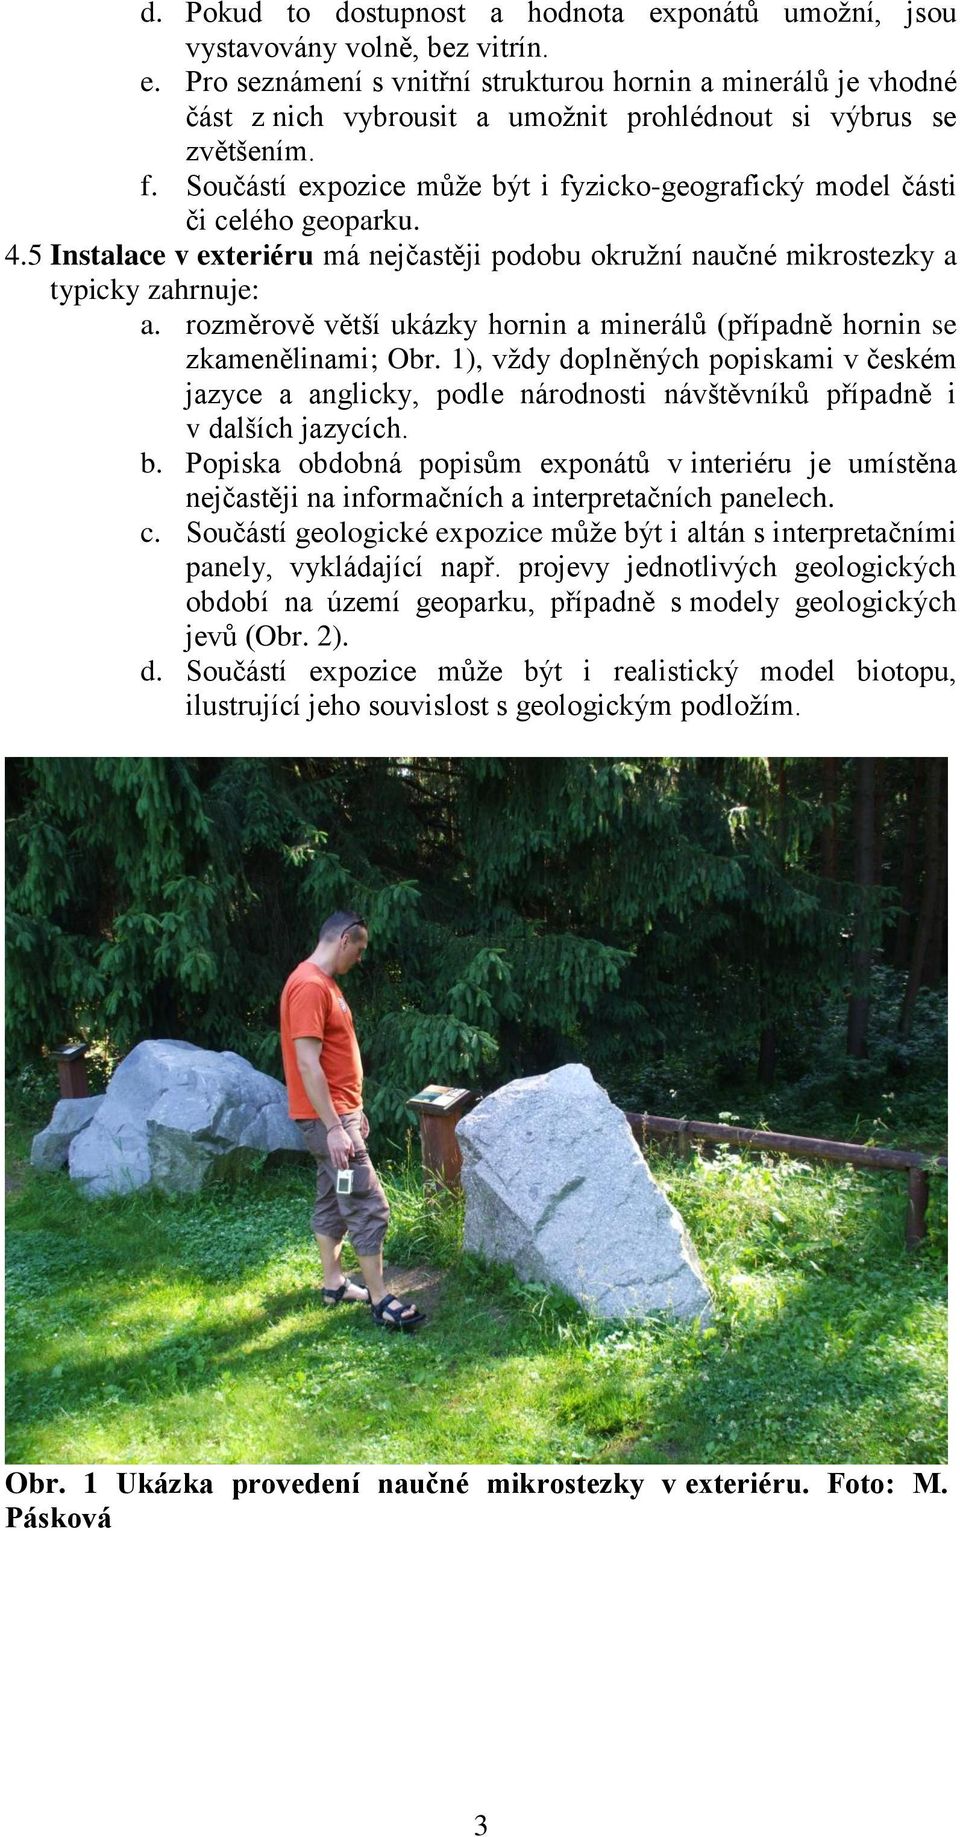 rozměrově větší ukázky hornin a minerálů (případně hornin se zkamenělinami; Obr. 1), vždy doplněných popiskami v českém jazyce a anglicky, podle národnosti návštěvníků případně i v dalších jazycích.